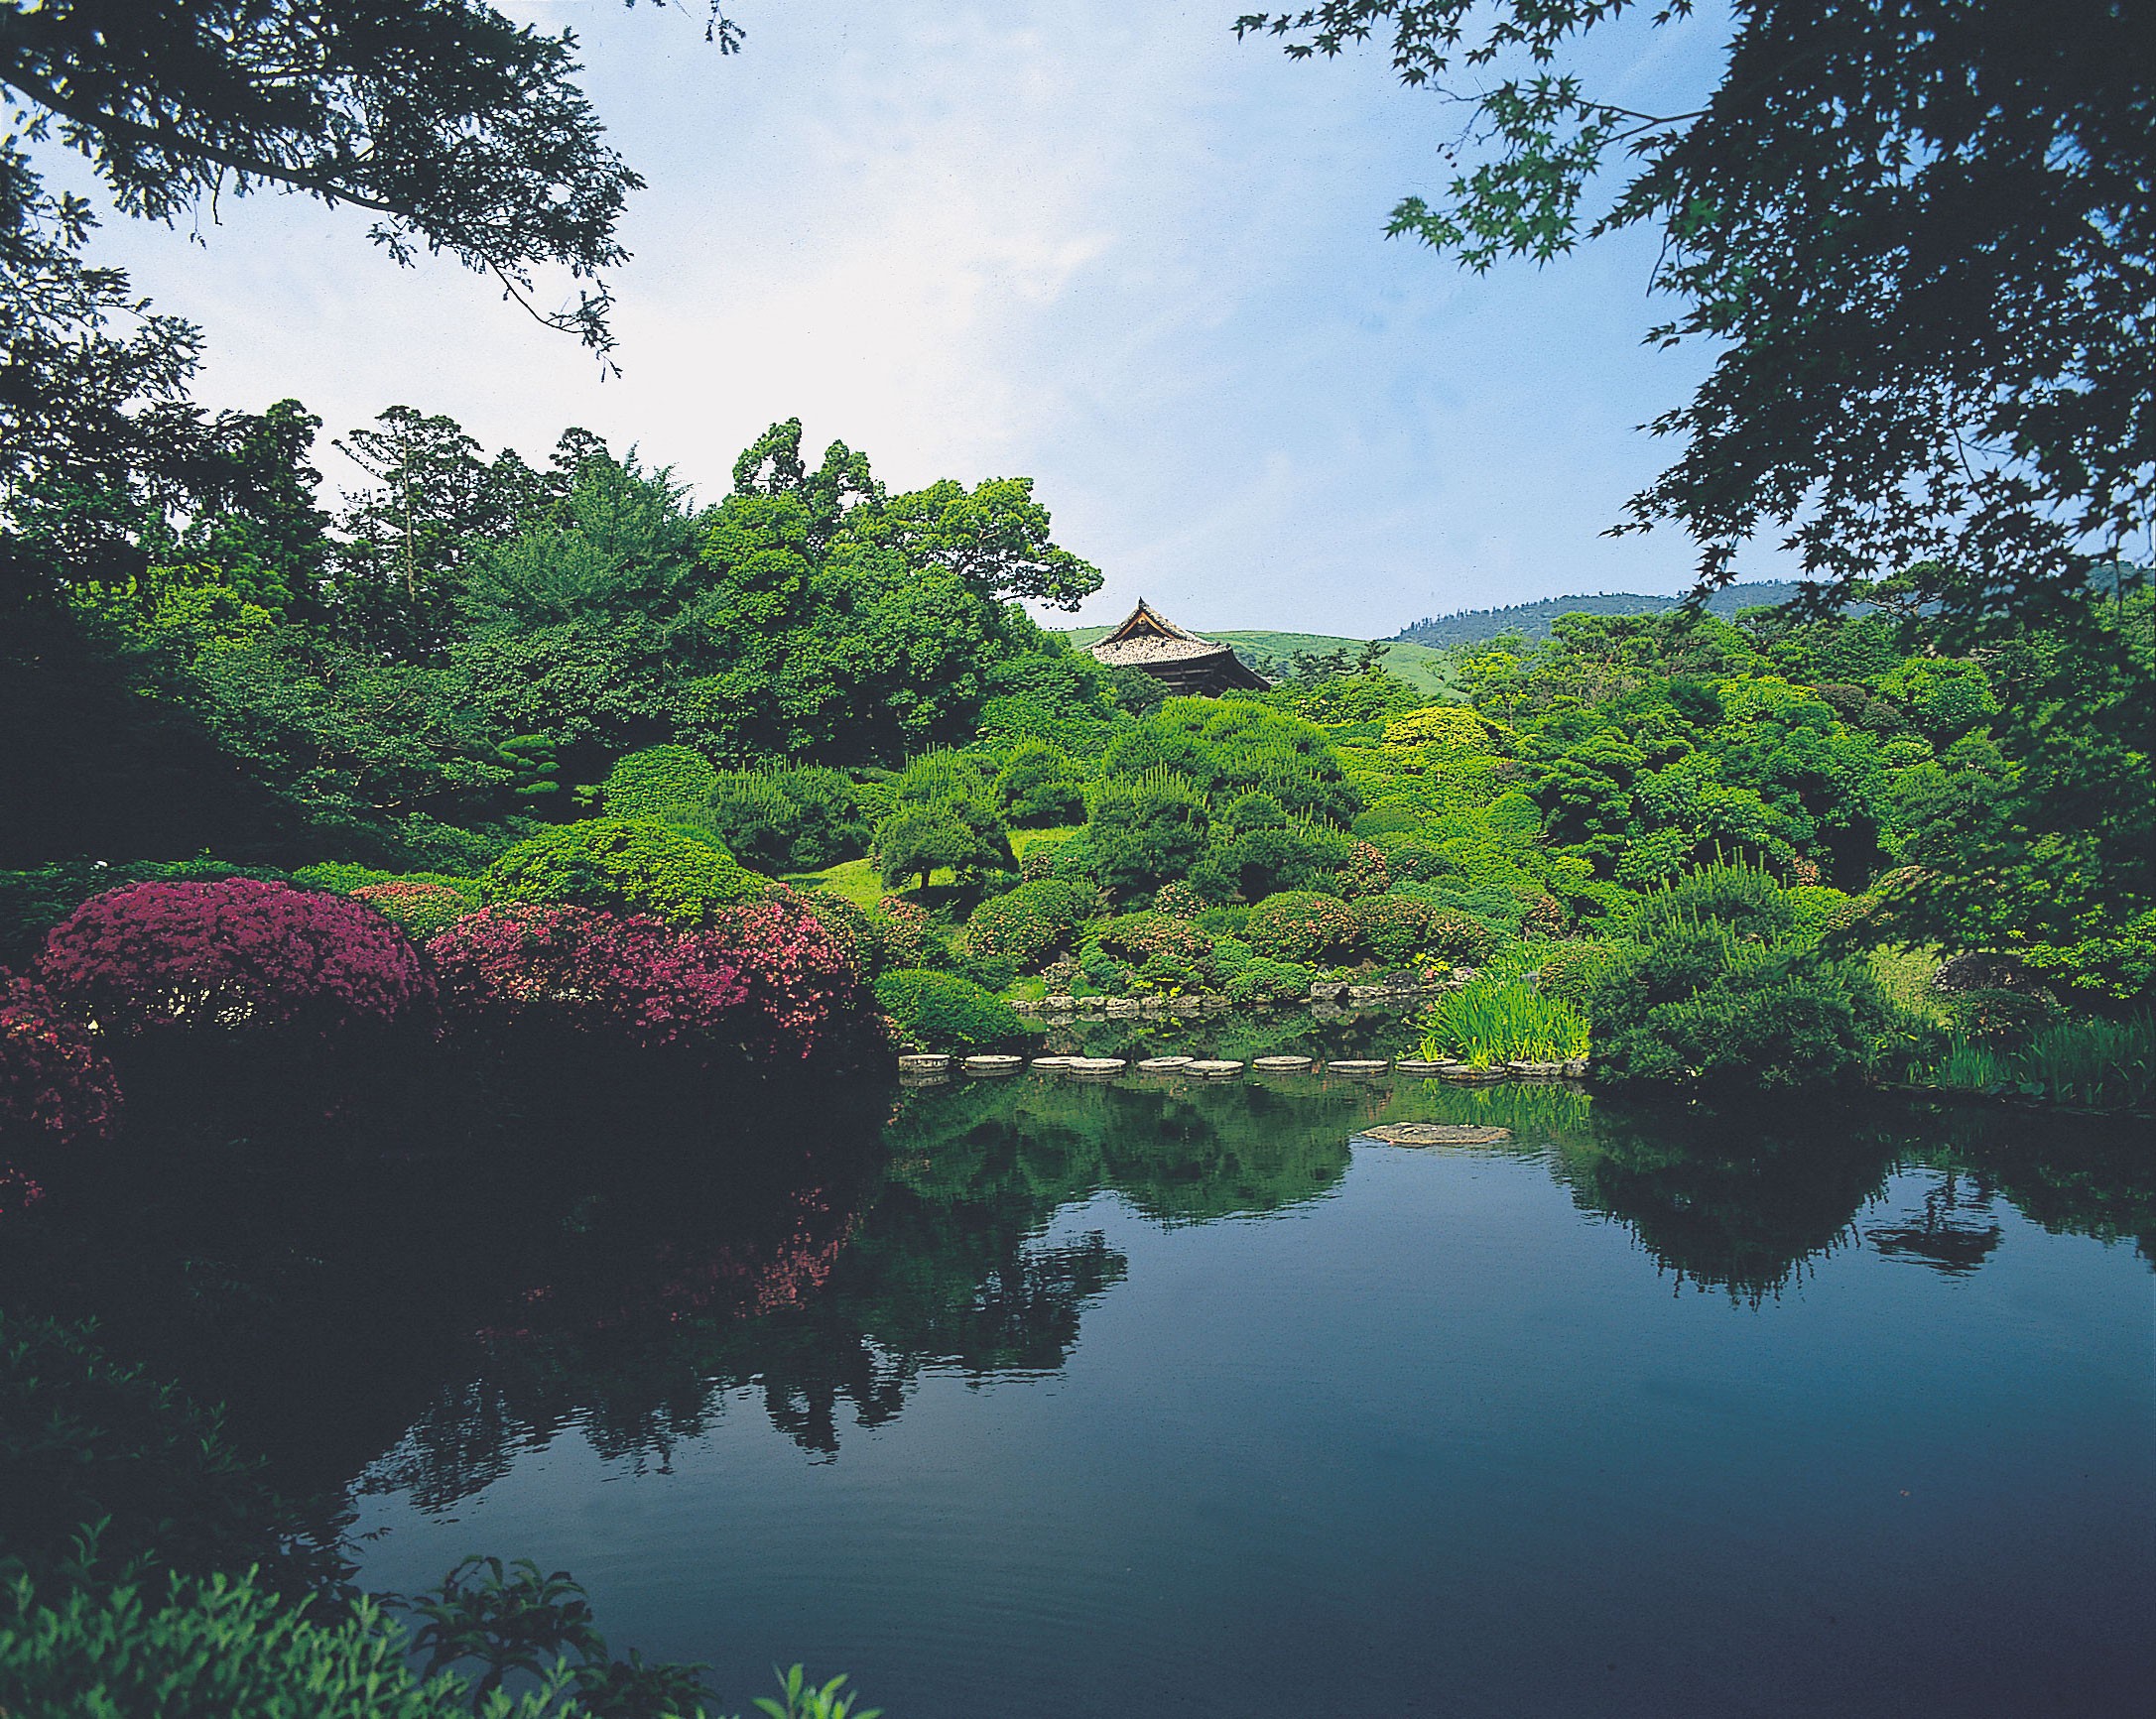 เต็มอิ่มกับสวนญี่ปุ่นสวยงามที่สวนอิซุยเอ็นในนาระที่ญี่ปุ่น!